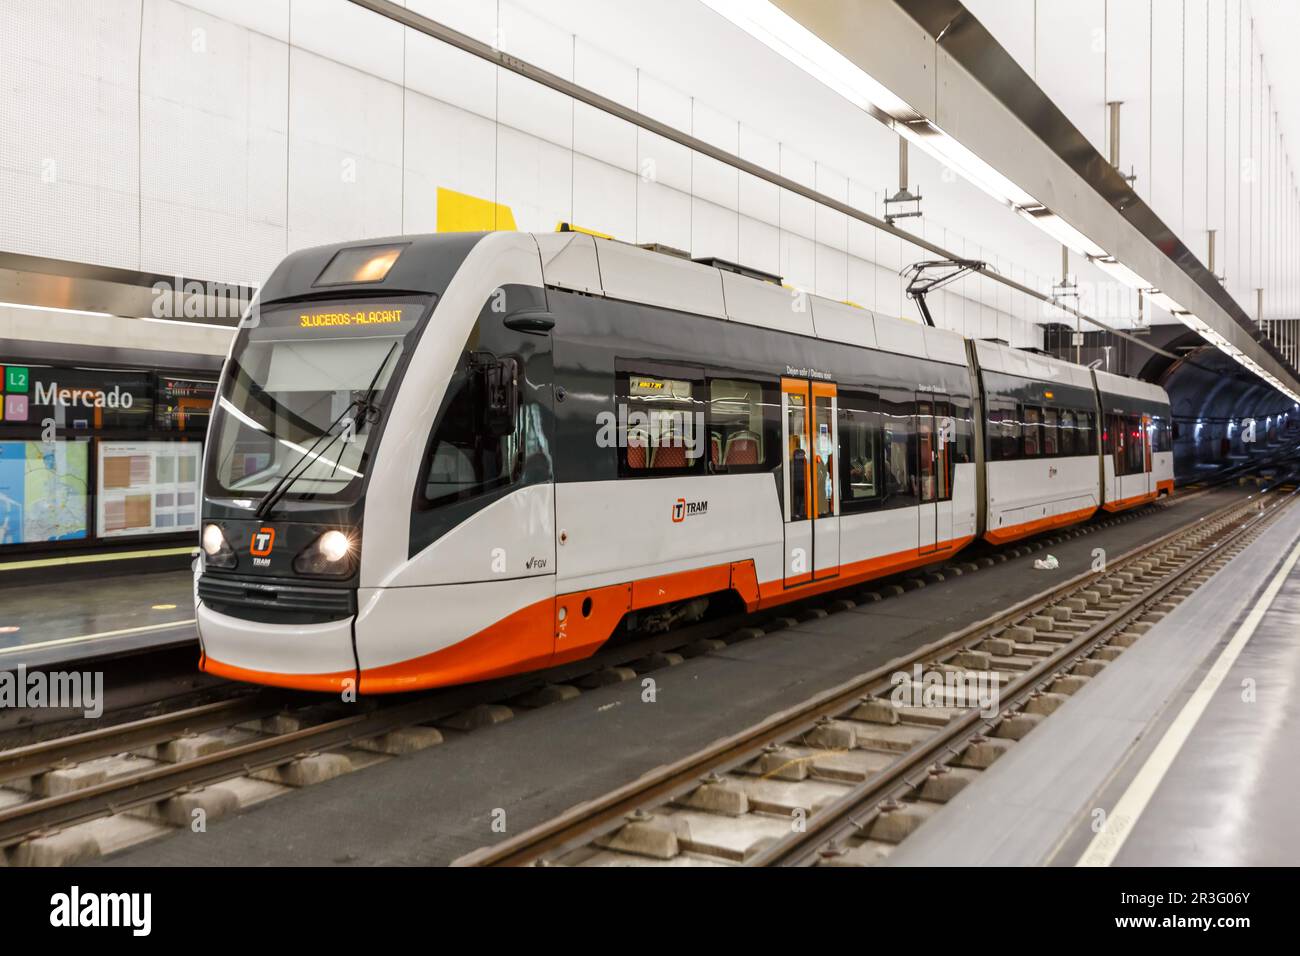 Système de train léger Vossloh Citylink moderne de Tram Alachant transport en commun à Alicante, Espagne Banque D'Images